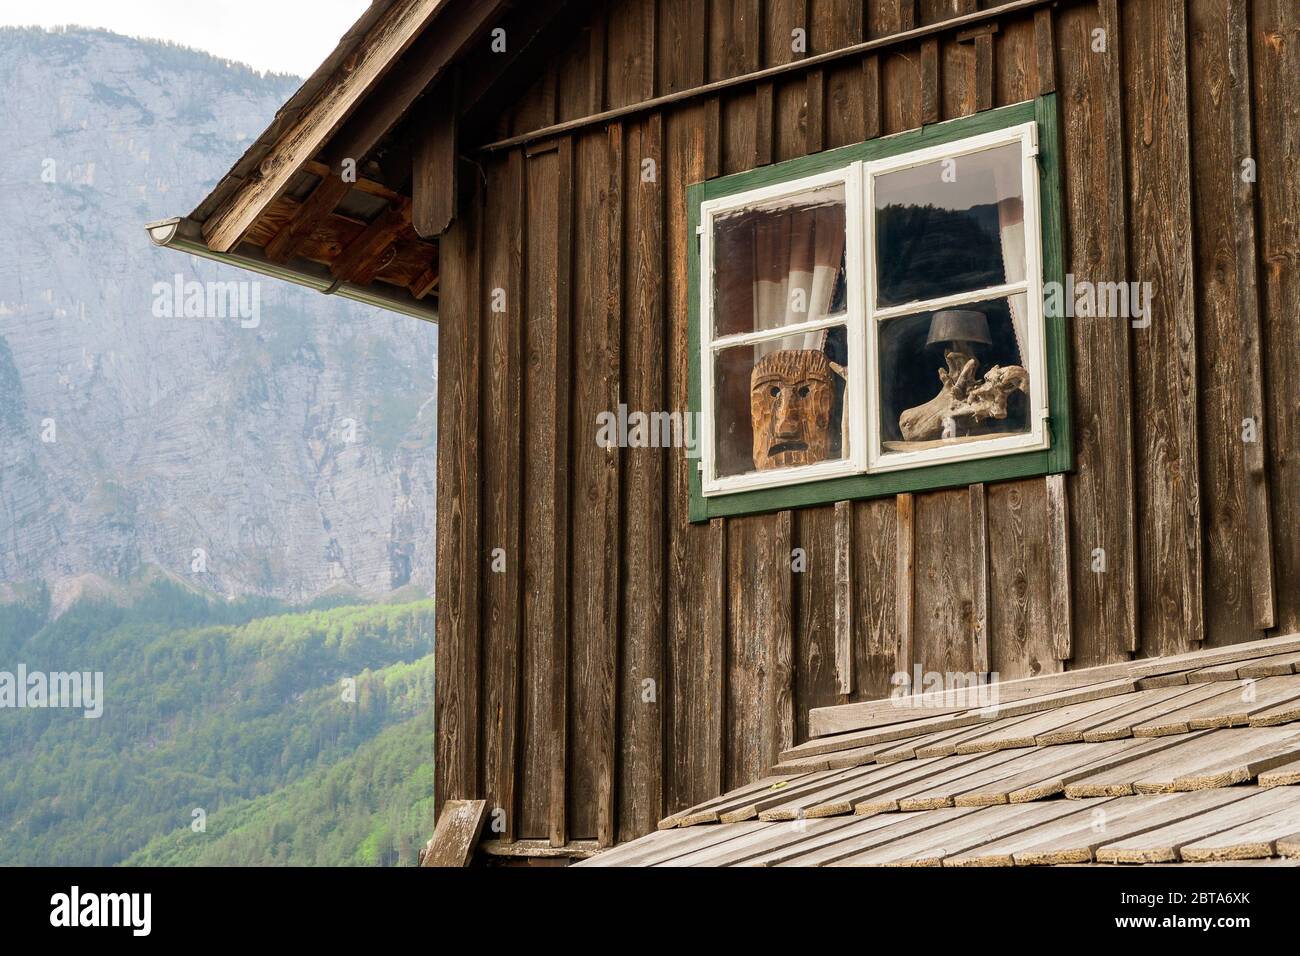 Una faccia antropomorfa scolpita di una specie di Woodwose usata come decorazione in una finestra di una vecchia casa tradizionale a Hallstatt, Salzkammergut, Austria Foto Stock